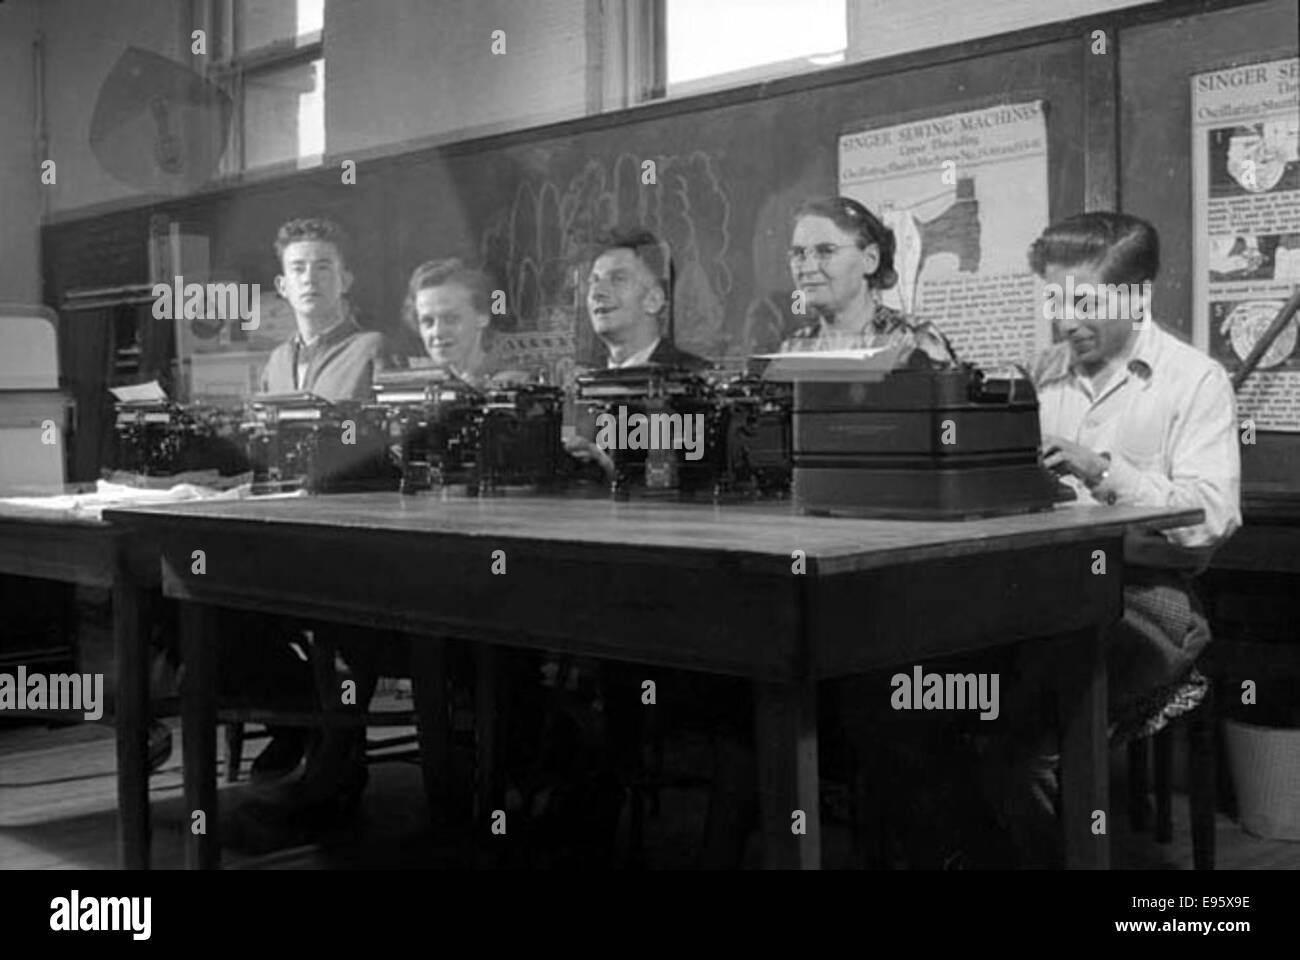 Fünf Leute sitzen auf Schreibmaschinen. 1940er Jahre, 1950er-Jahre 21/4 x 31/4 negative Dies ist einer der 54 Fotos im Album "Fort Macleod anonym". Die meisten sind in den späten 1940er Jahren in Fort Macleod, Alberta gedreht. Der Spender des pH-Werts Stockfoto